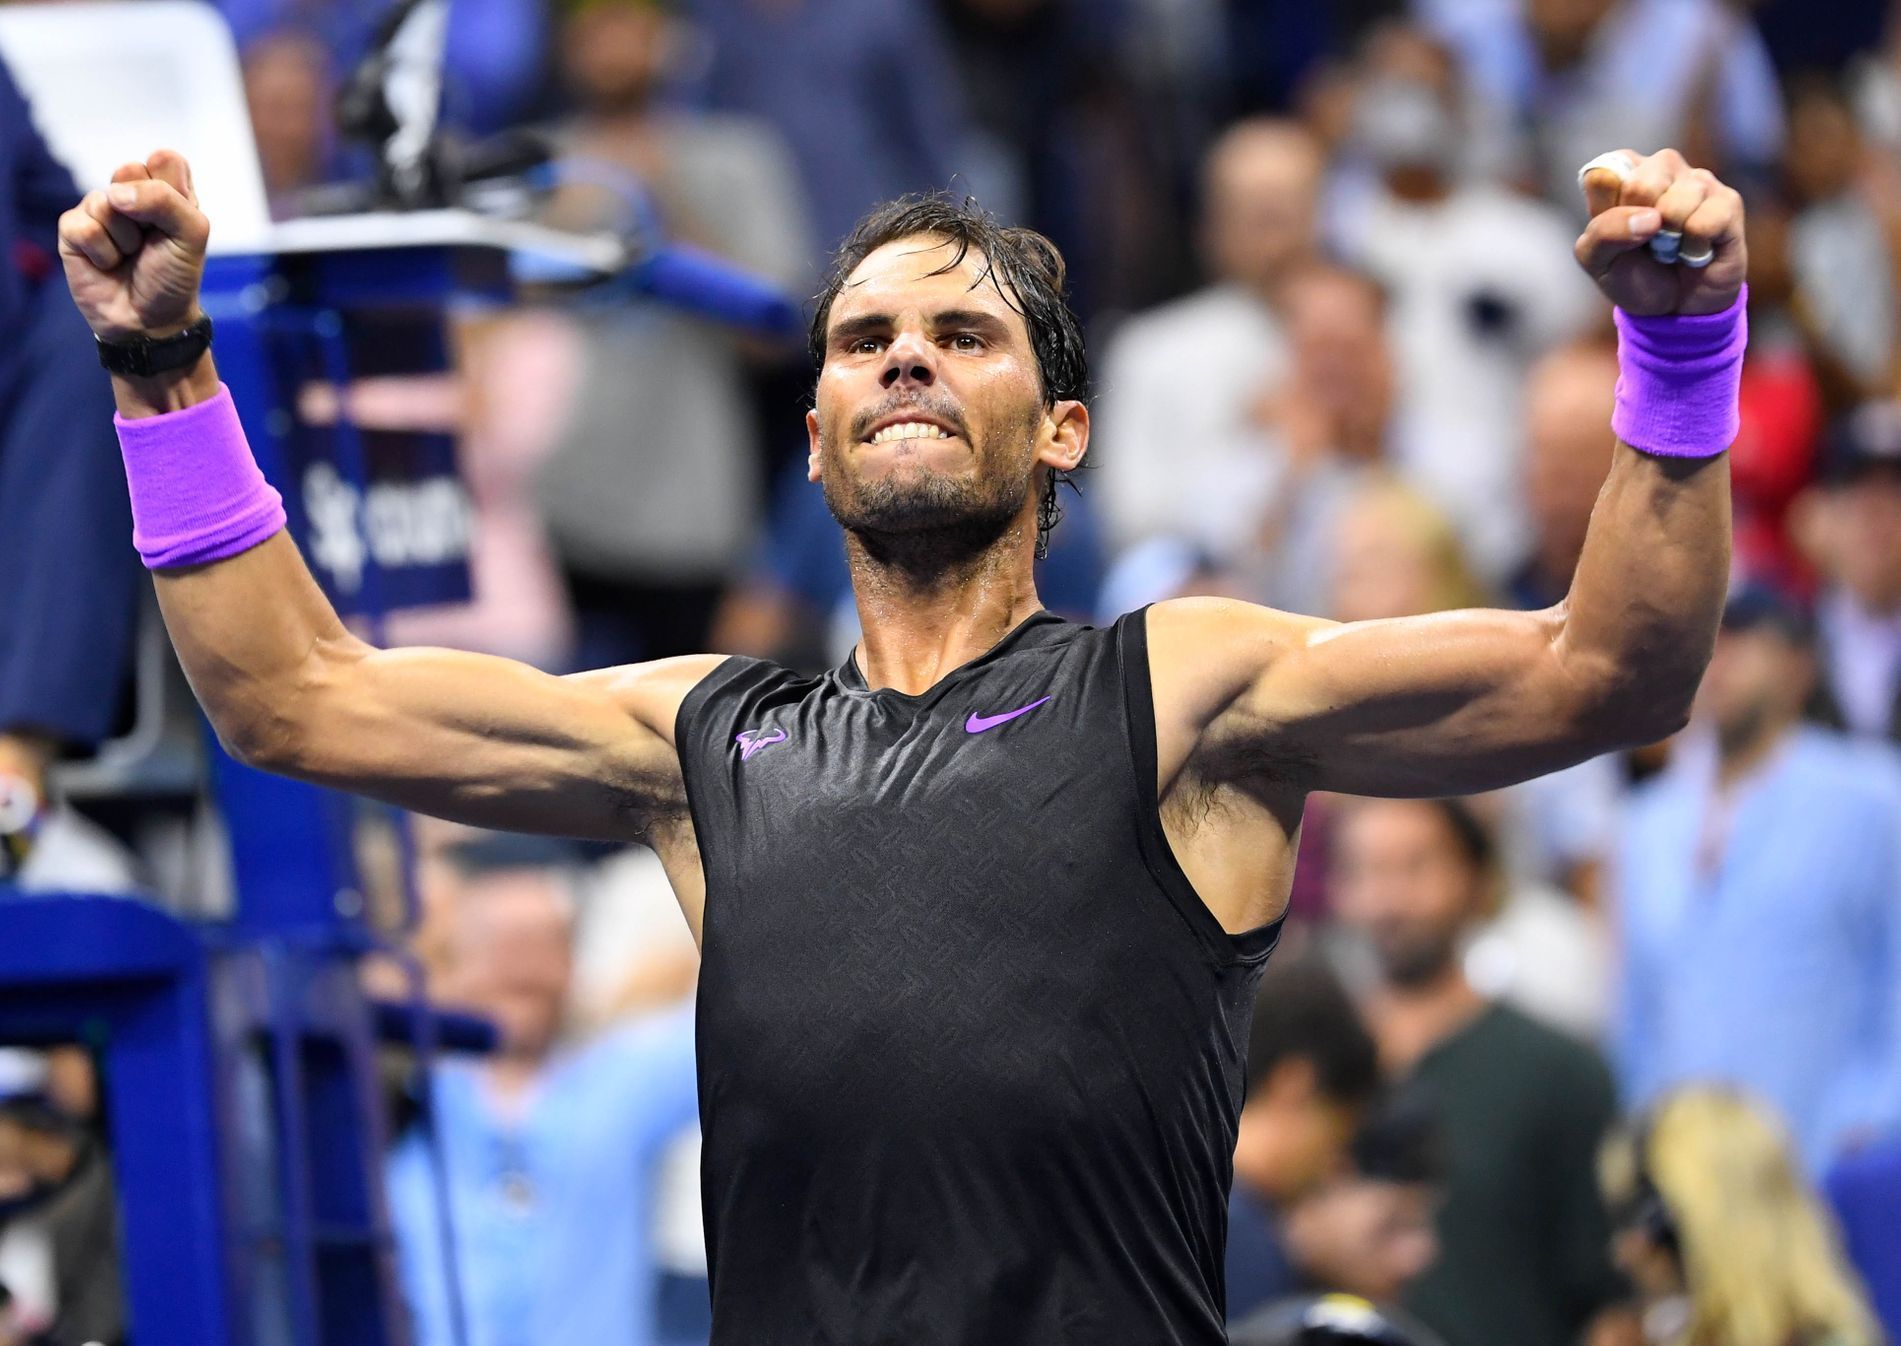 Rafael Nadal v osmifinále US Open 2019